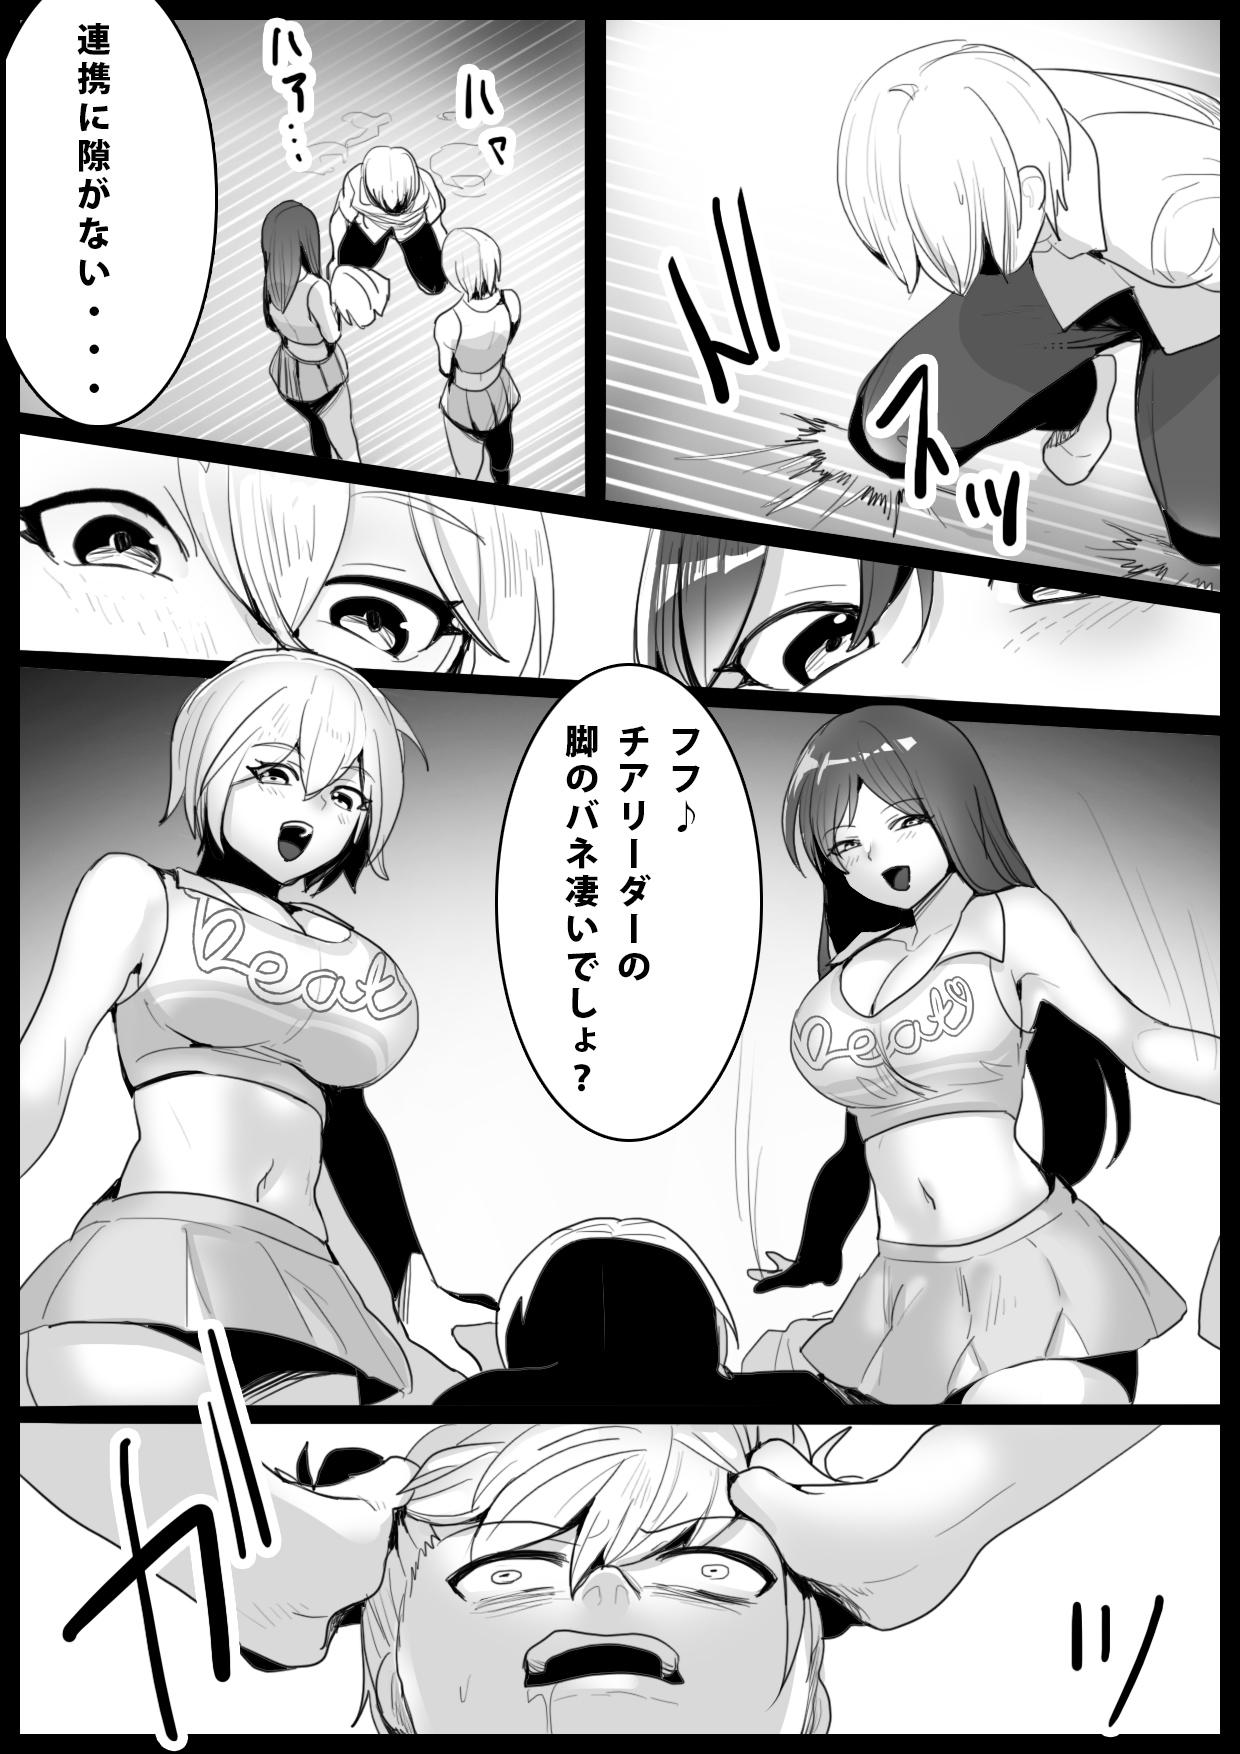 Gritona Girls Beat! vs Shizuku & Mia English ver Street - Page 7